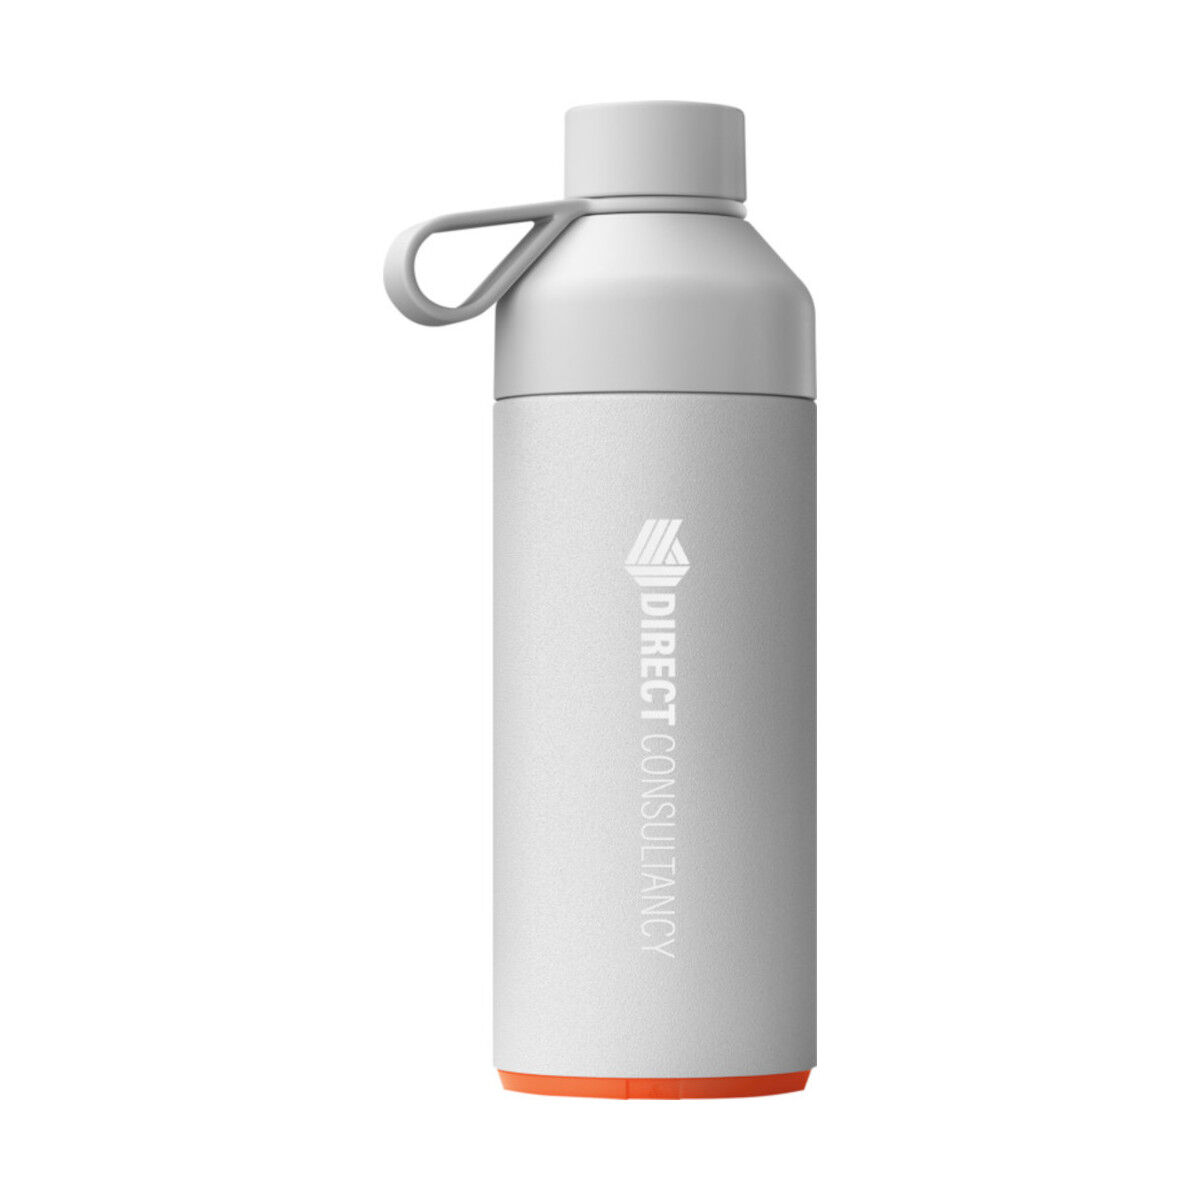 Big Ocean Bottle (grey with sample branding)